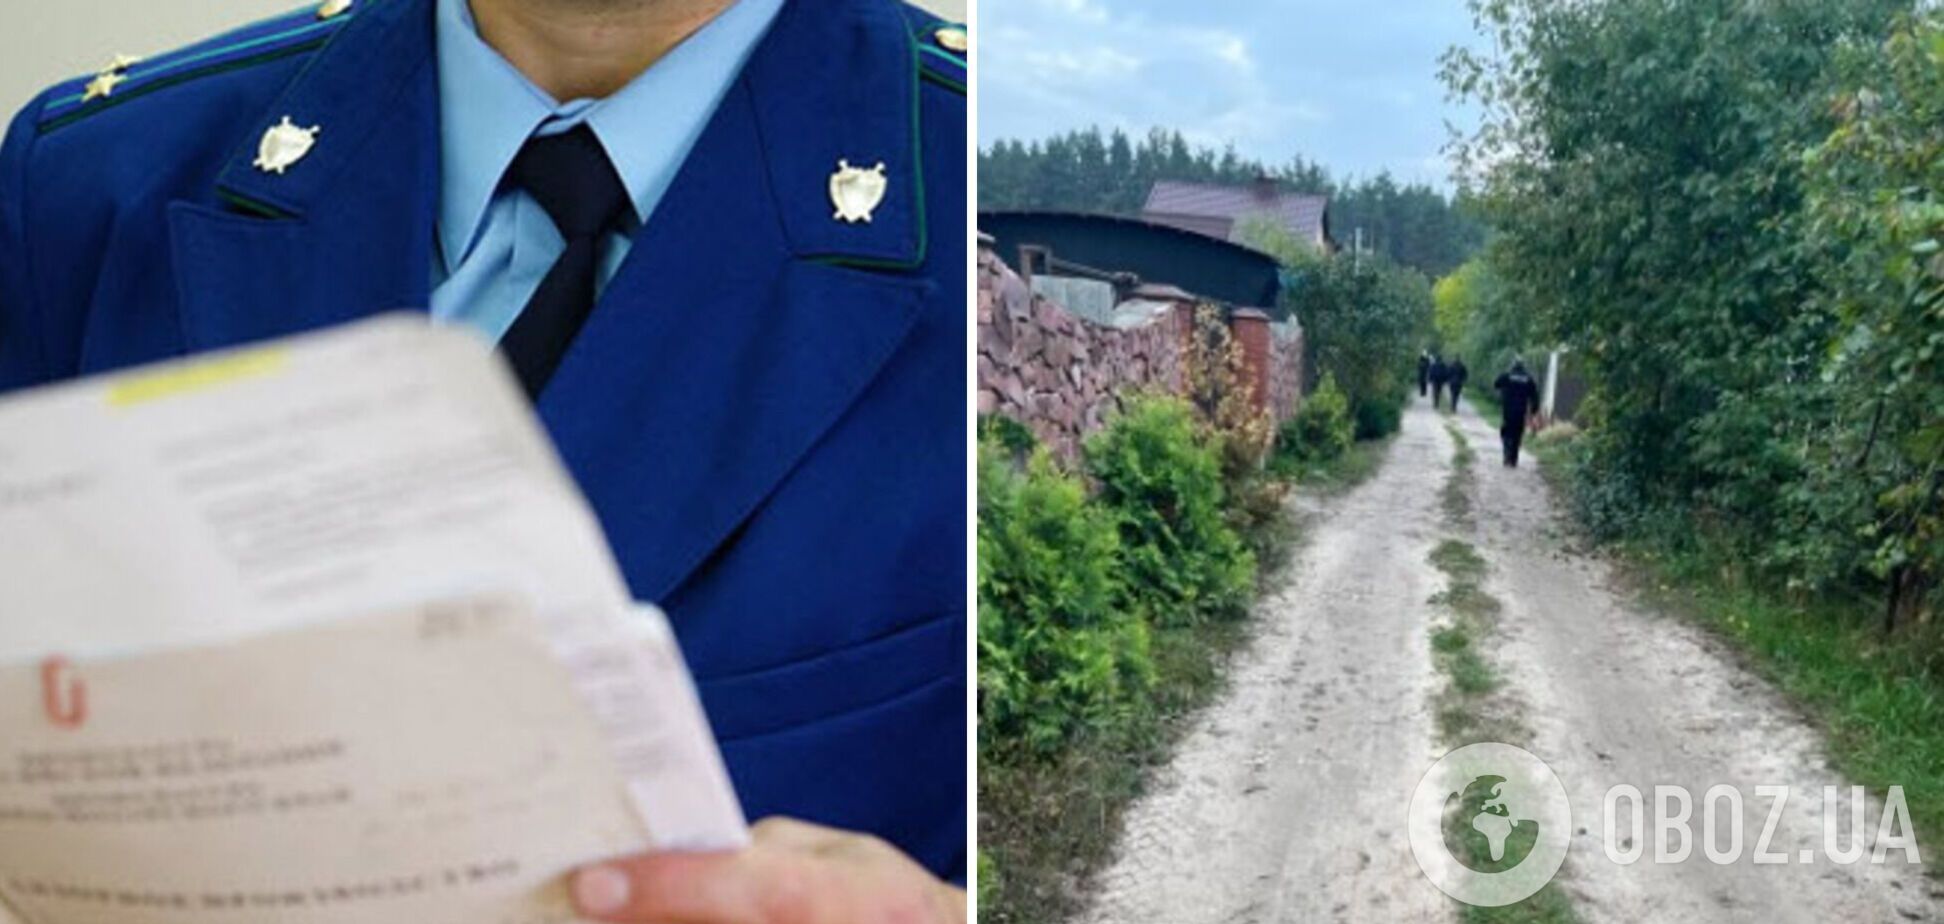 'Голову спрятал в зарослях': на Киевщине мужчина убил собственного сына и расчленил его тело